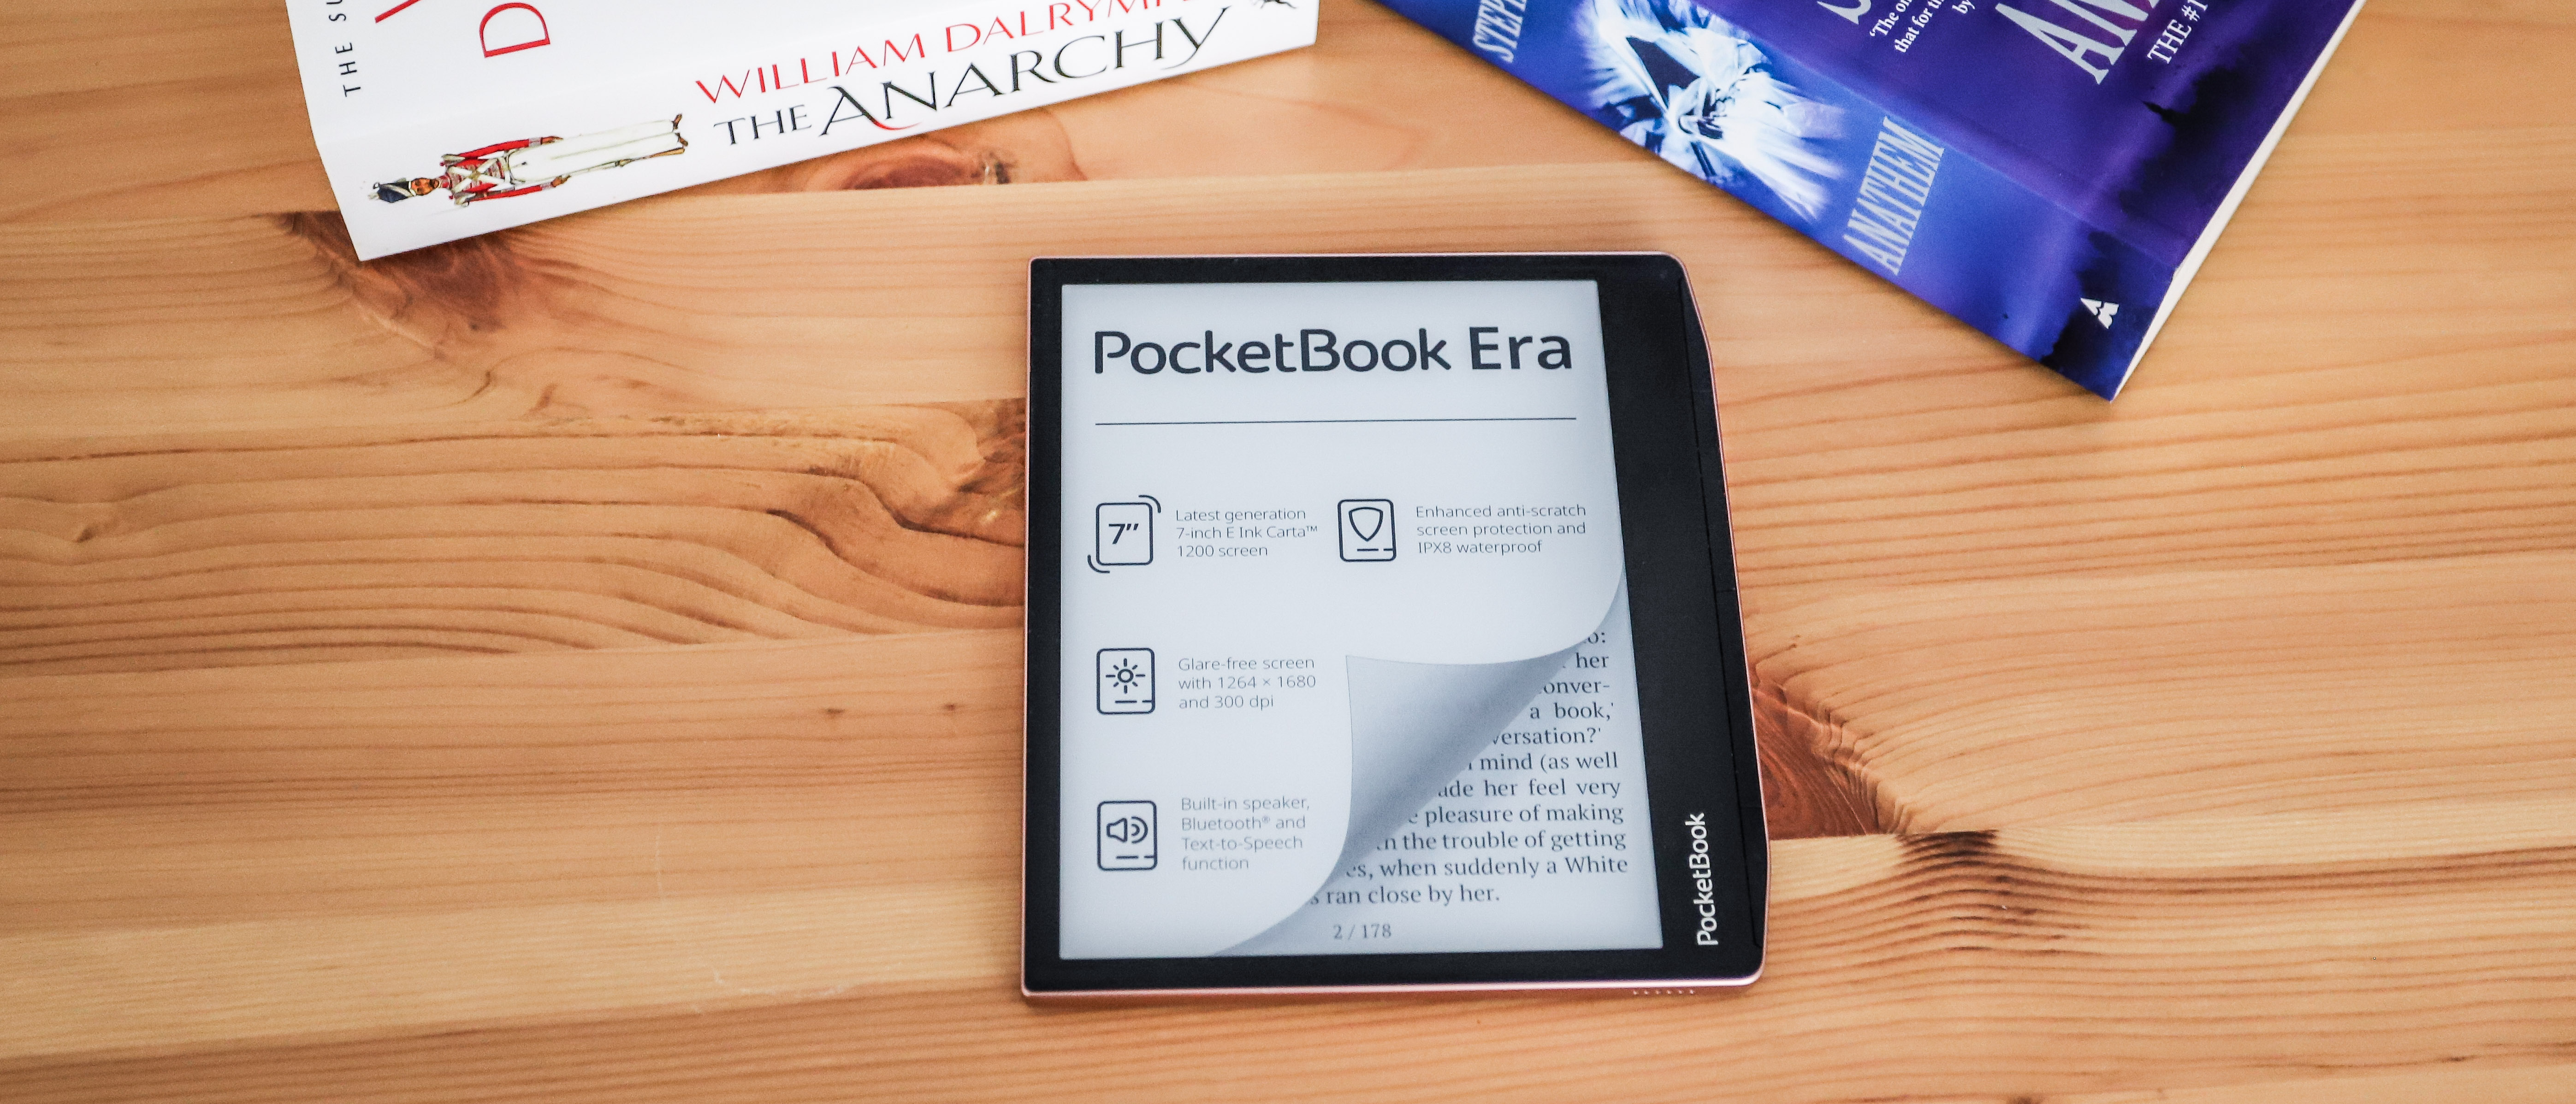 How to attach the Flip cover to PocketBook Era e-reader 